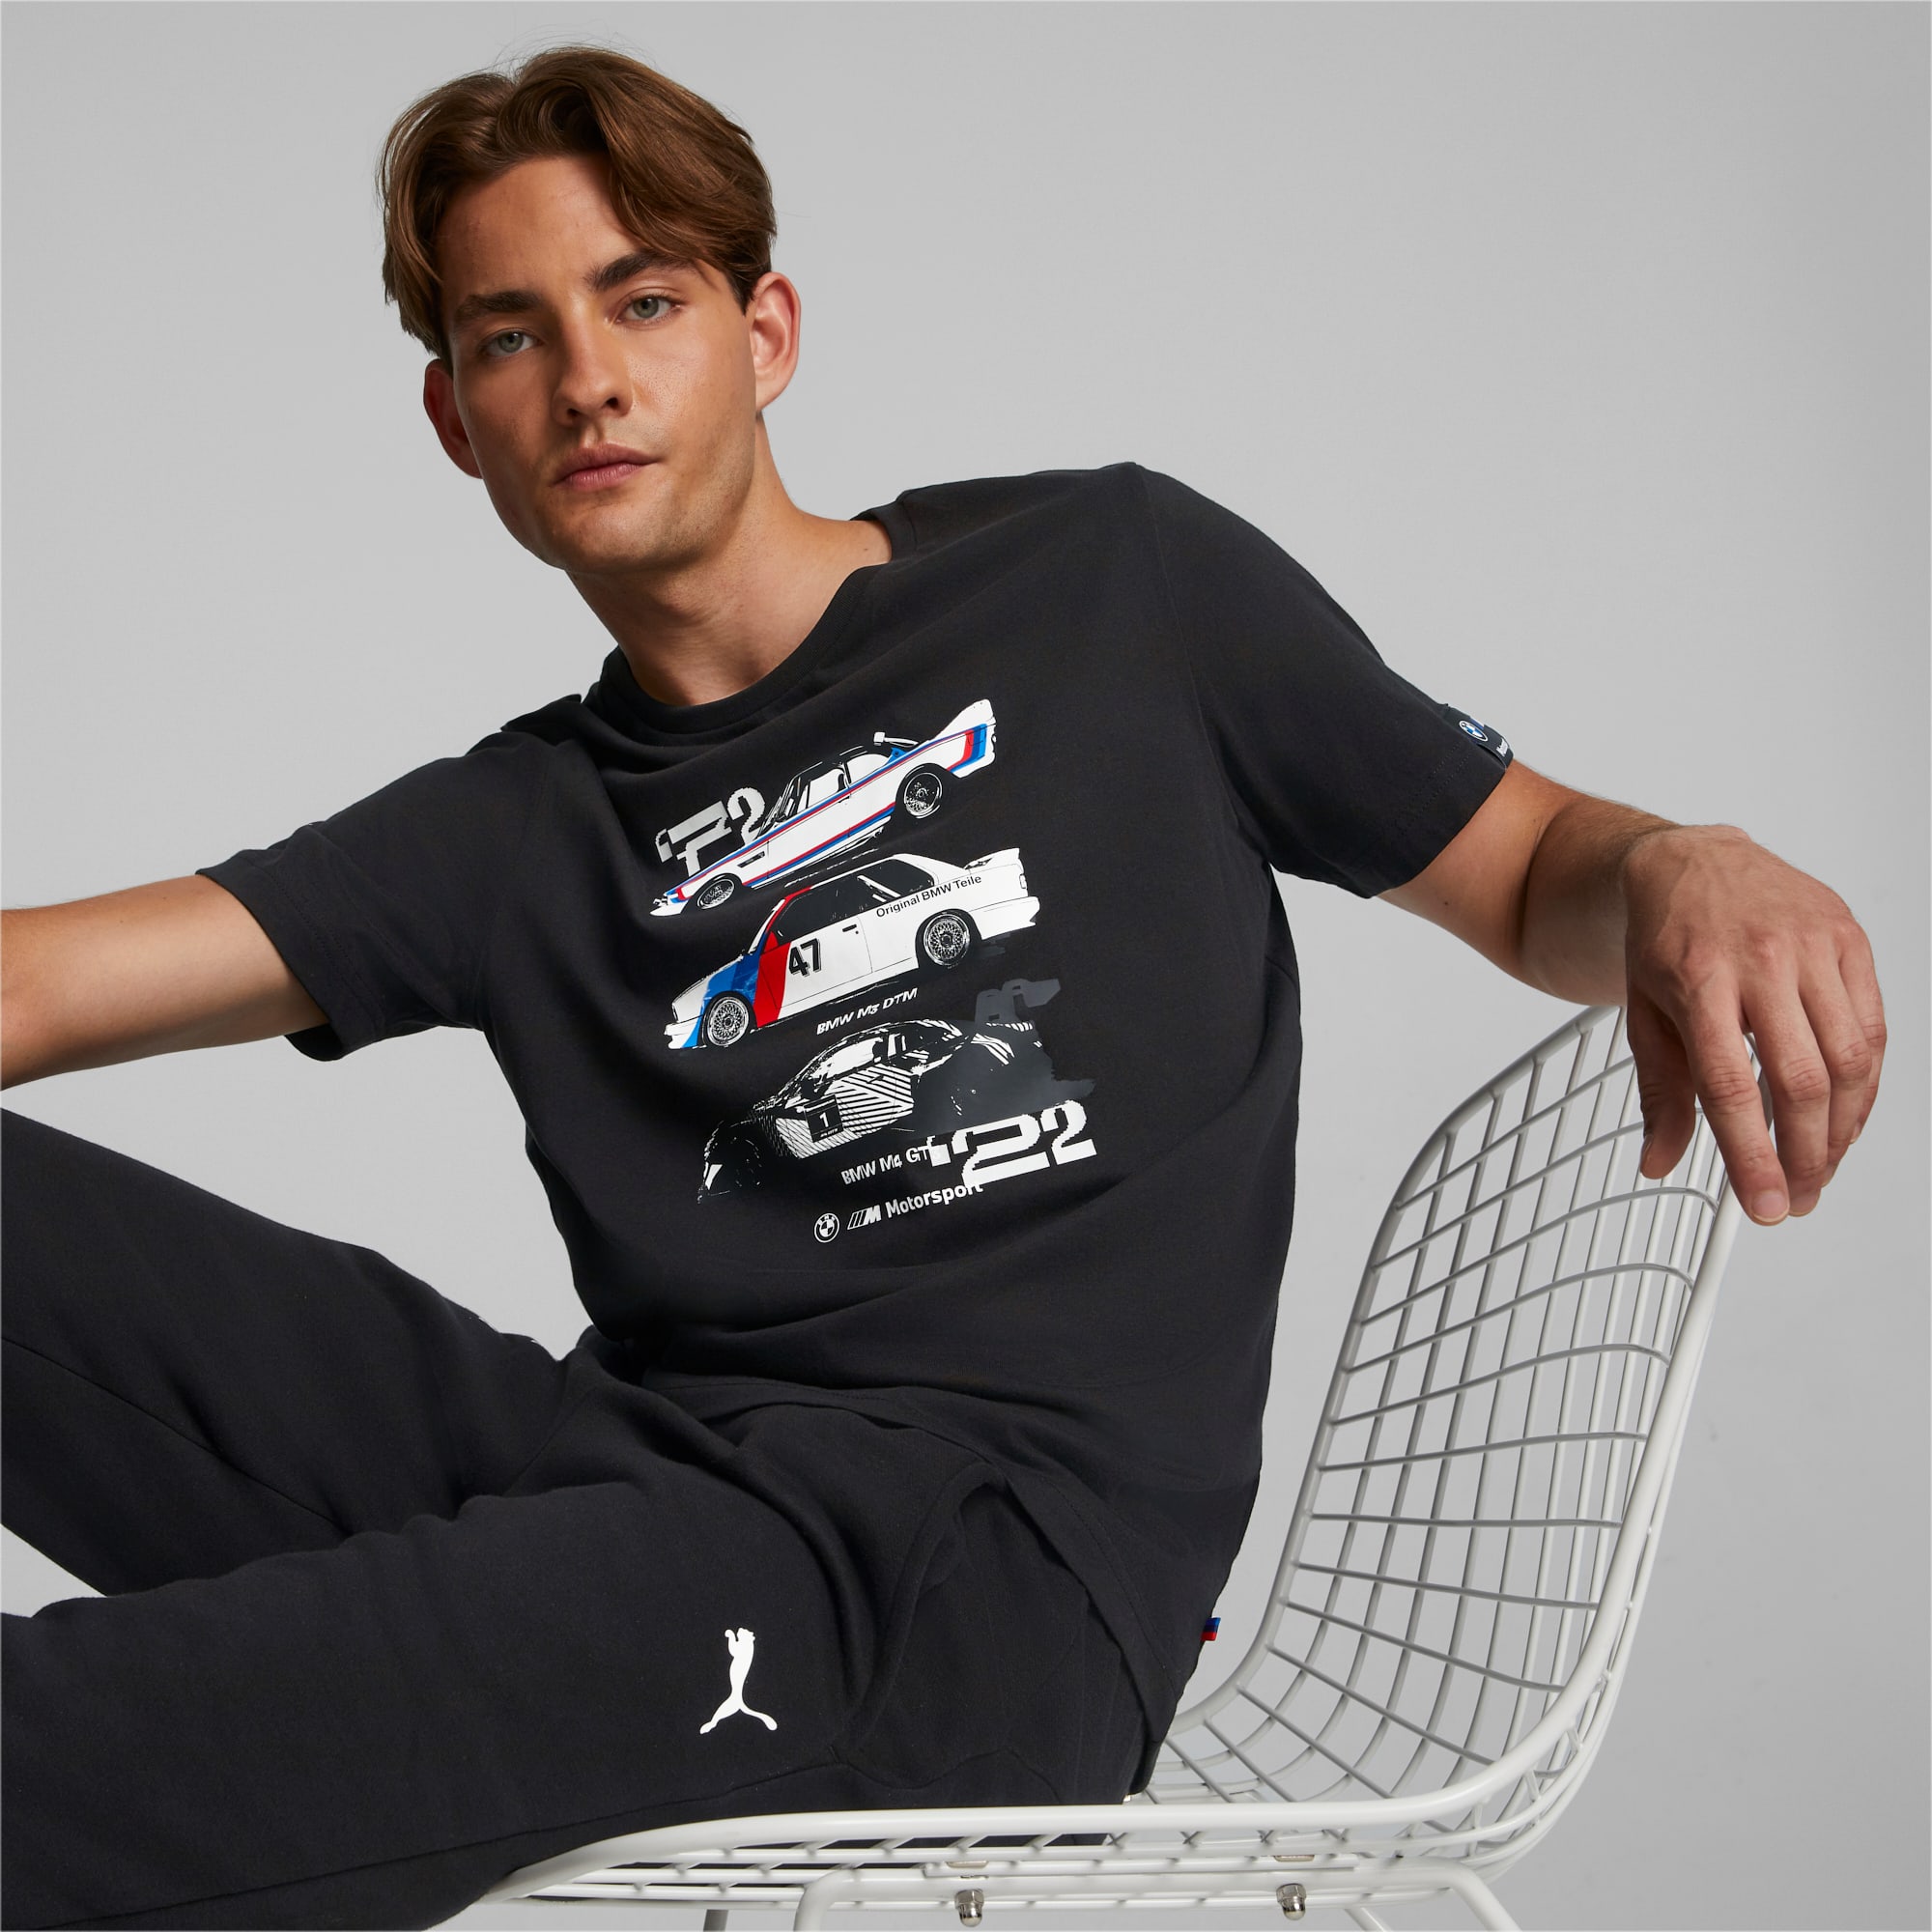 ACCESSOIRES ORIGINE BMW - T-shirt Homme voiture BMW M Motorsport